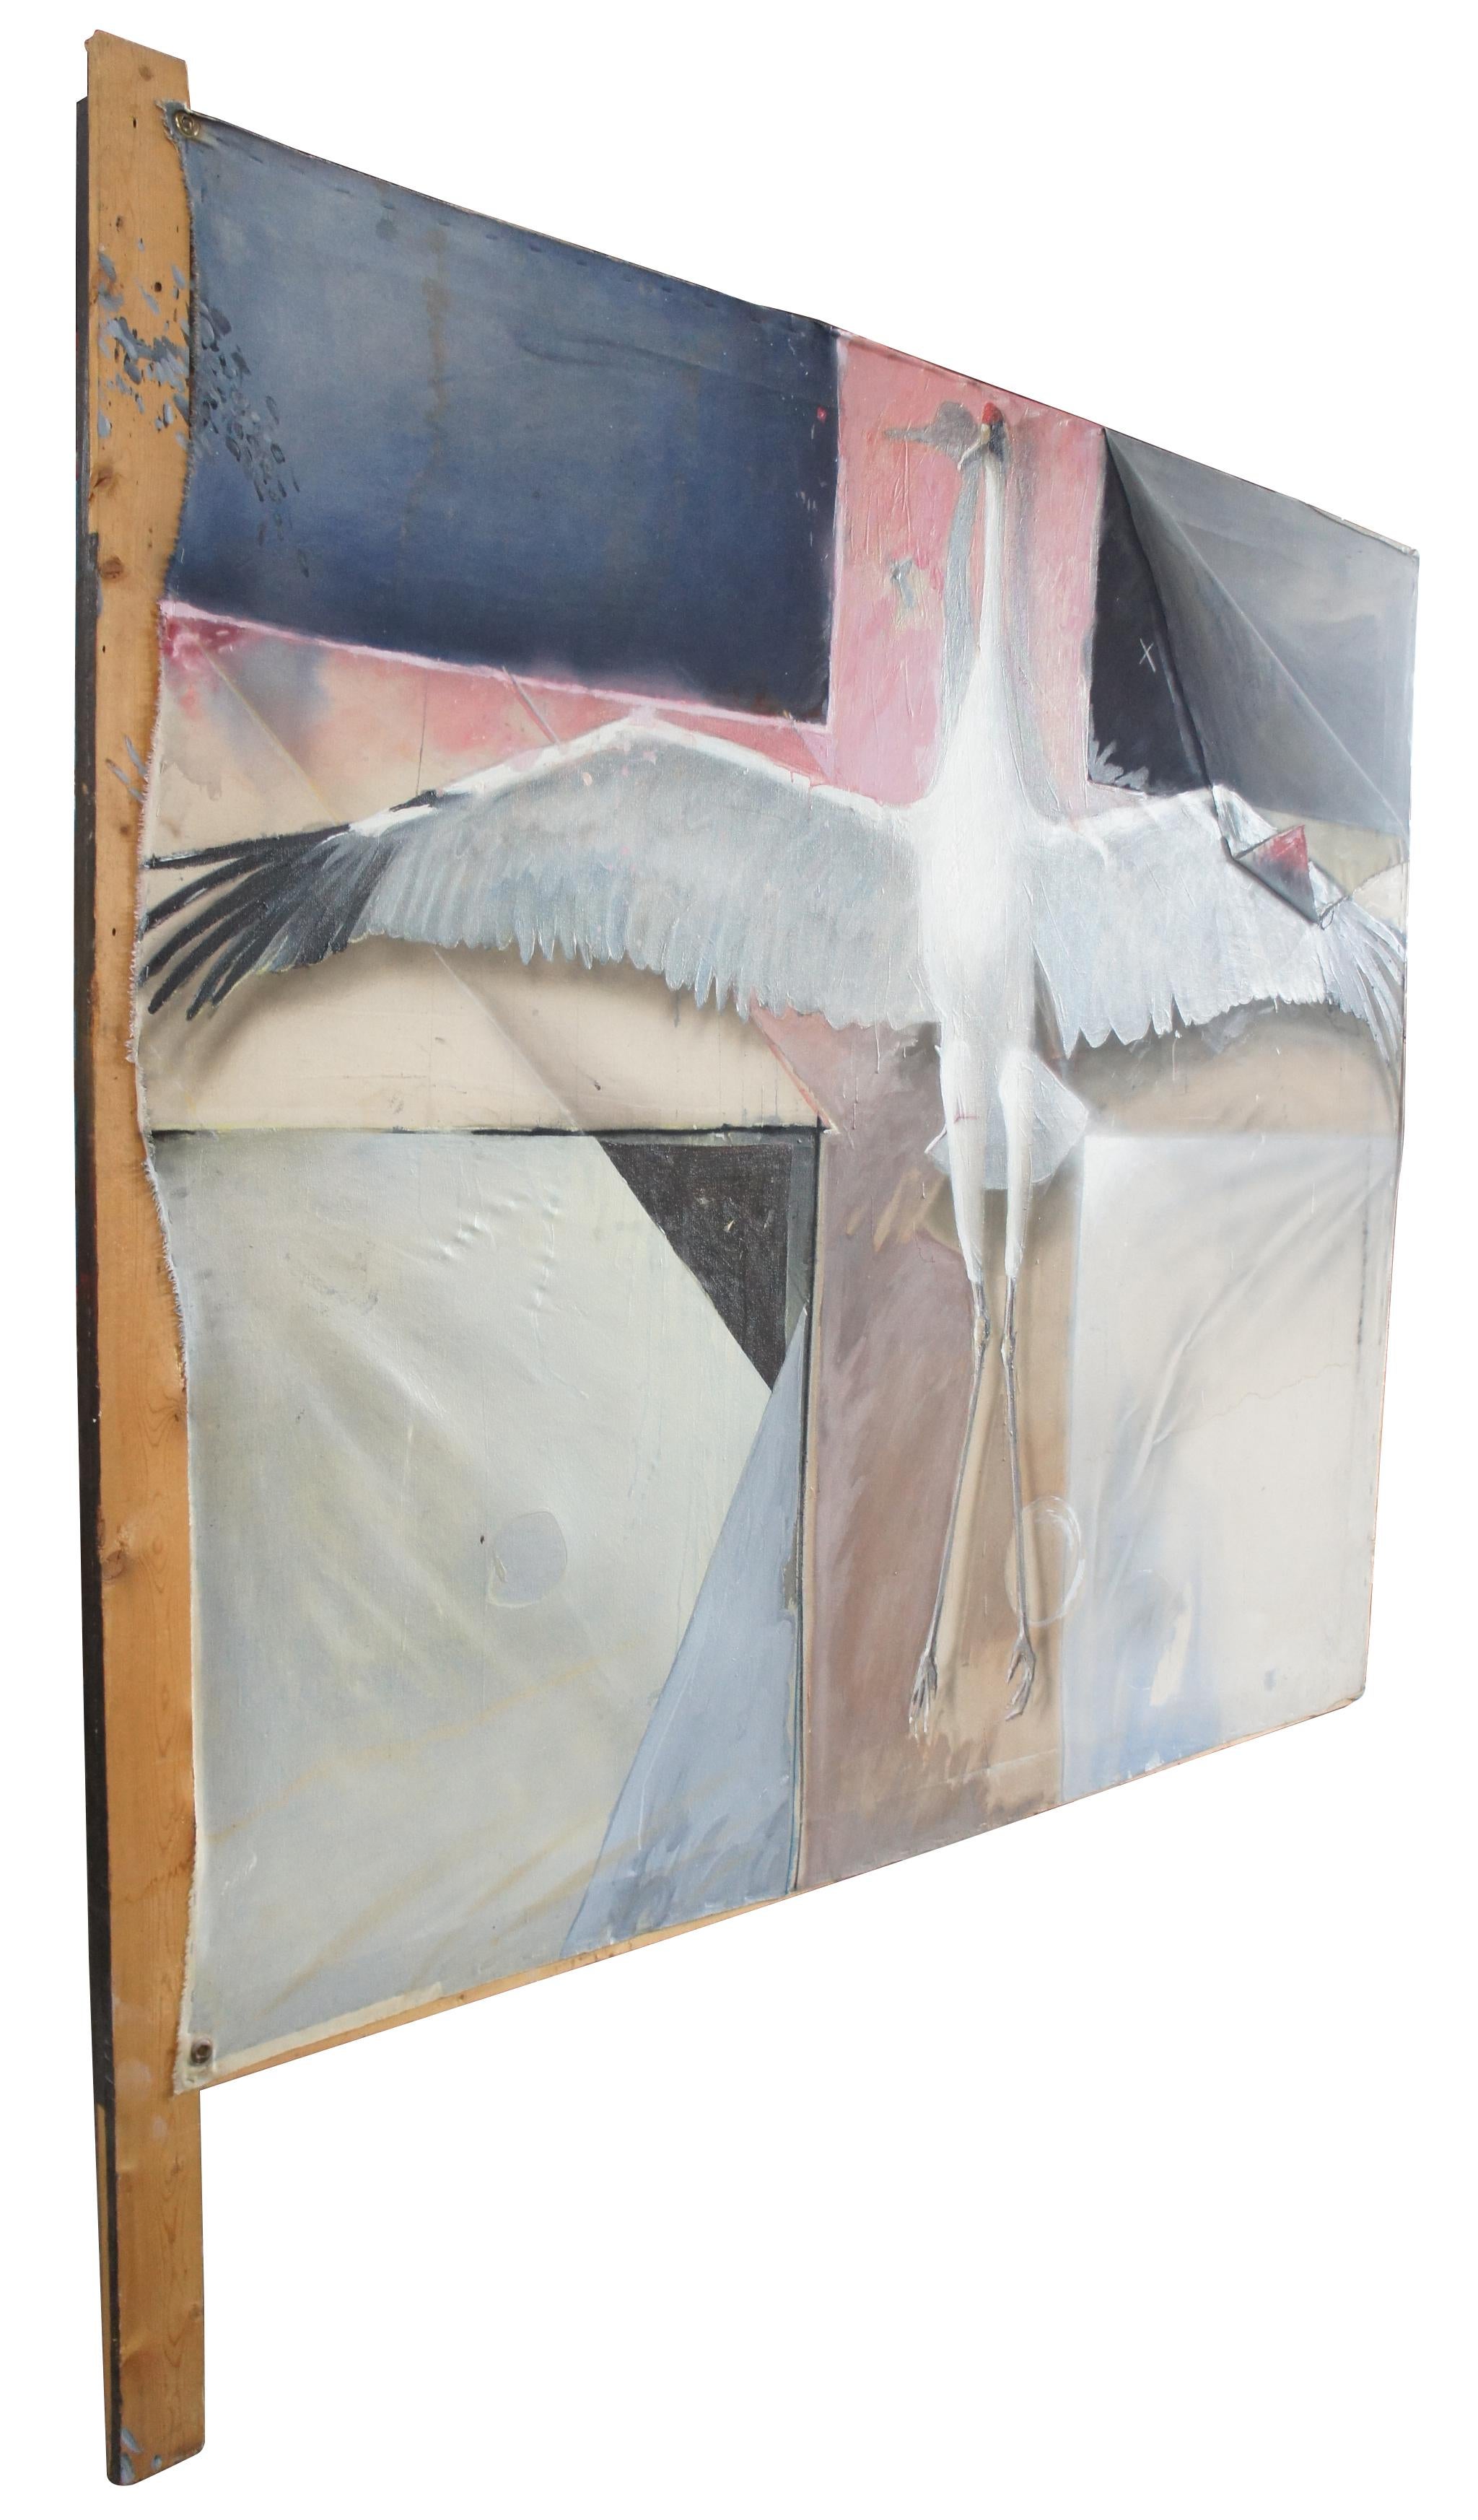 Greg Glazier peinture multimédia huile sur toile peinture crucifiée grue du Canada cigogne

Greg A Glazier est un artiste actif à Salt Lake City, Utah.